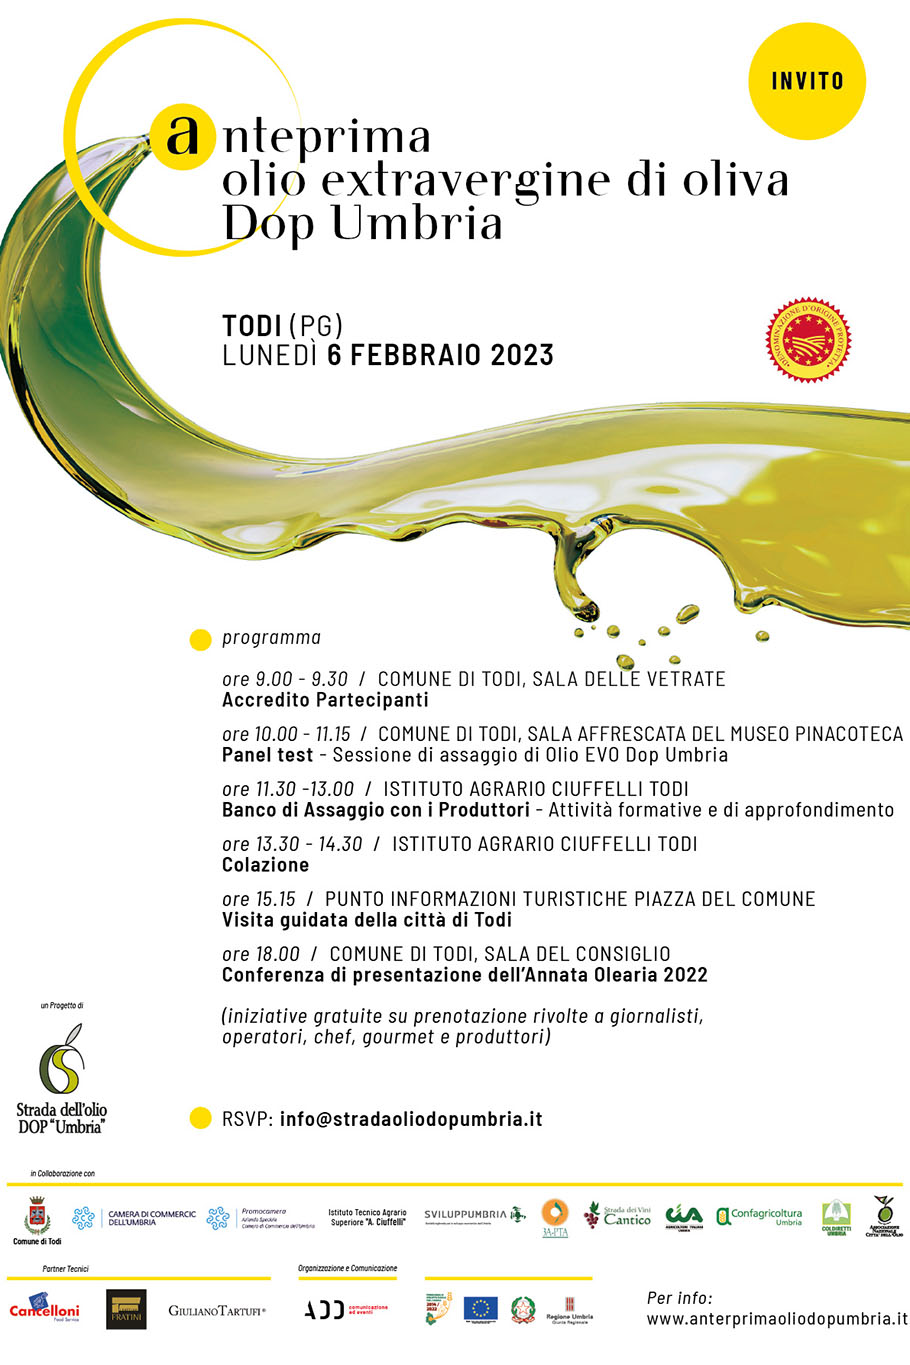 Anteprima dop Umbria Todi 6 febbraio 2023 programma